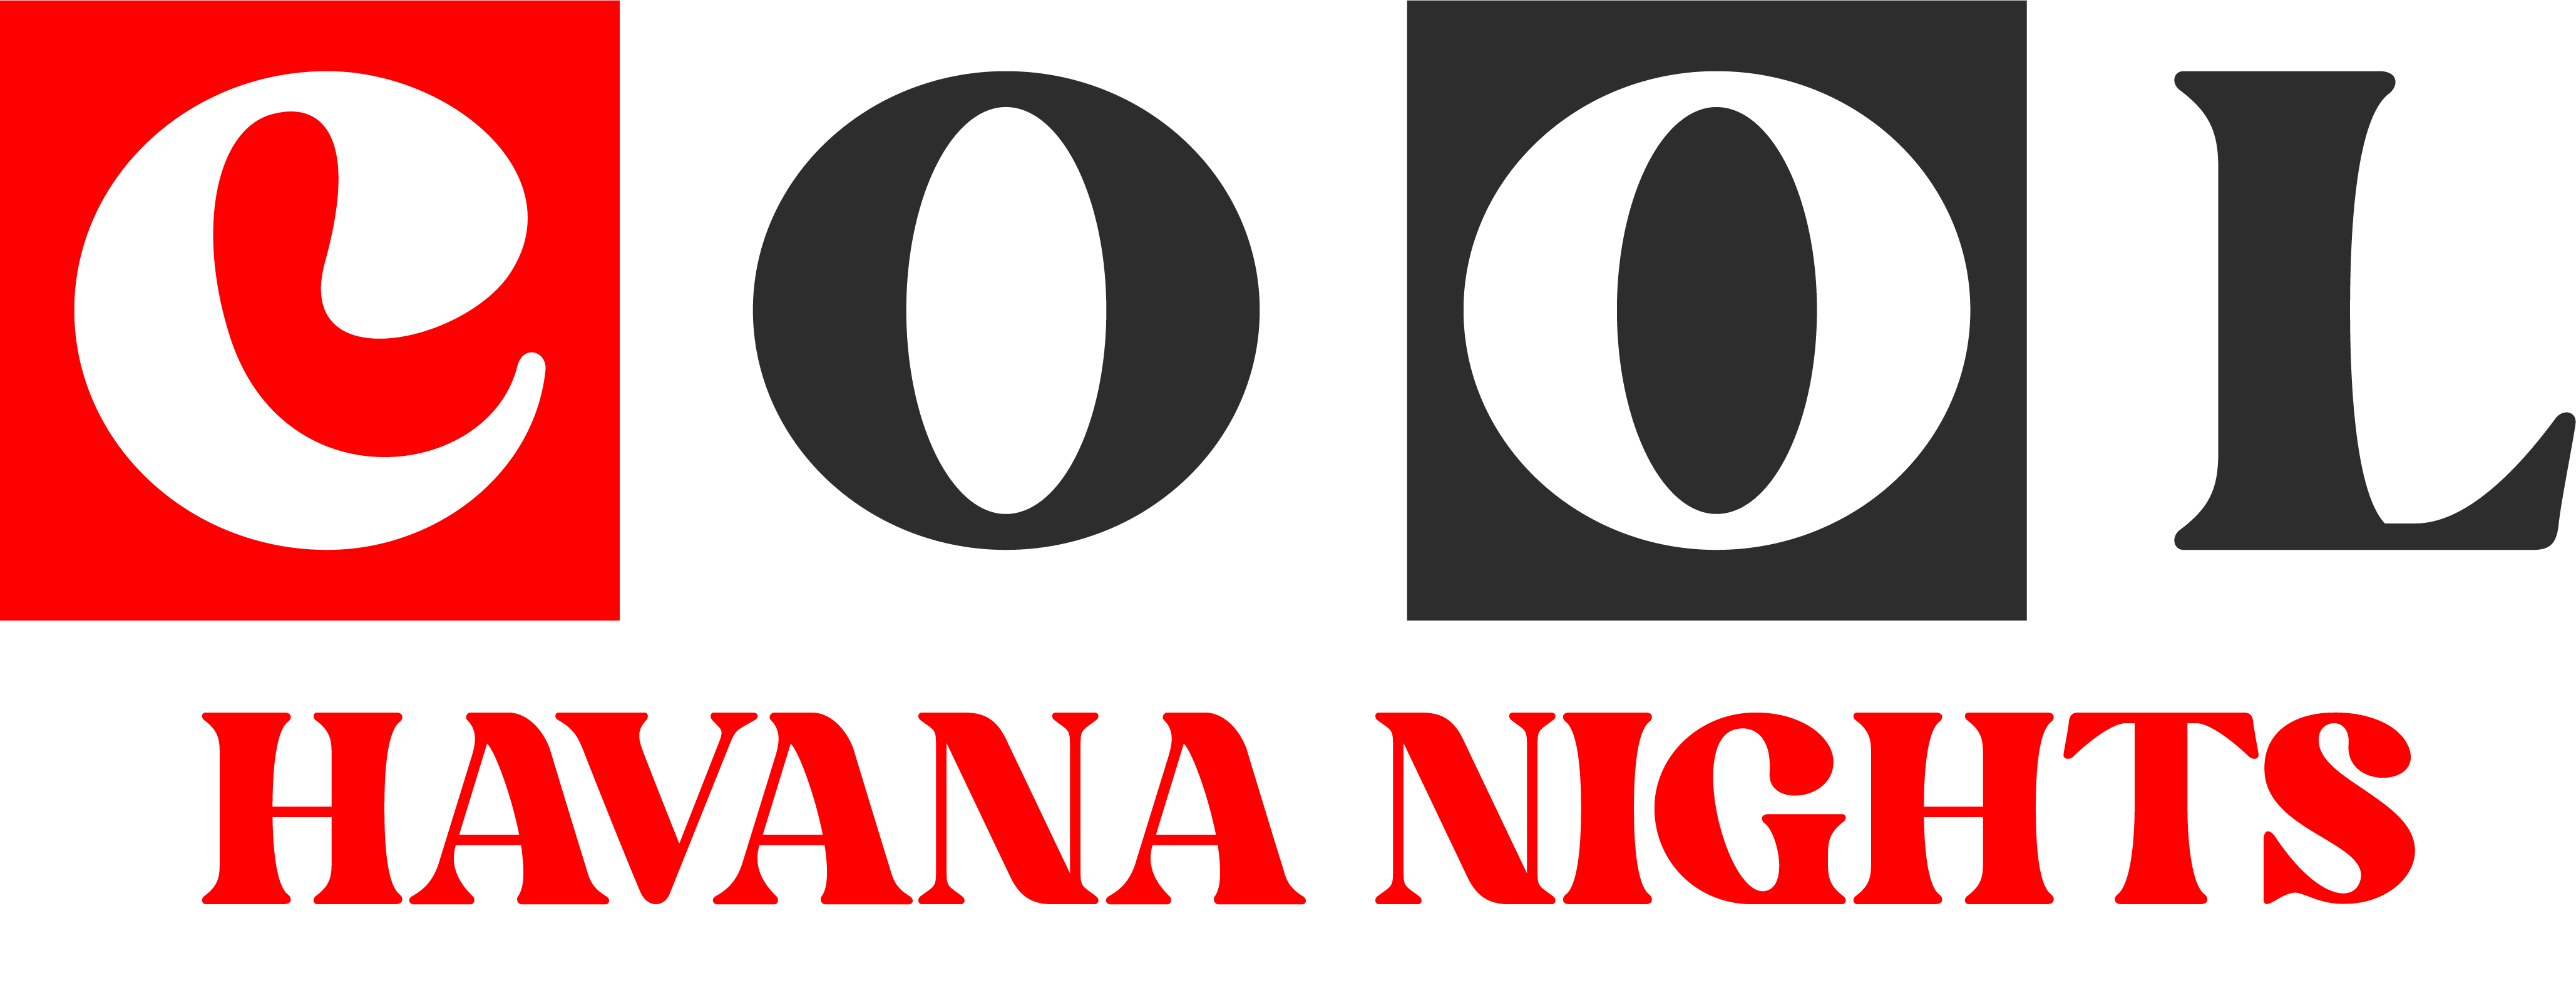 Cool Havana Nights